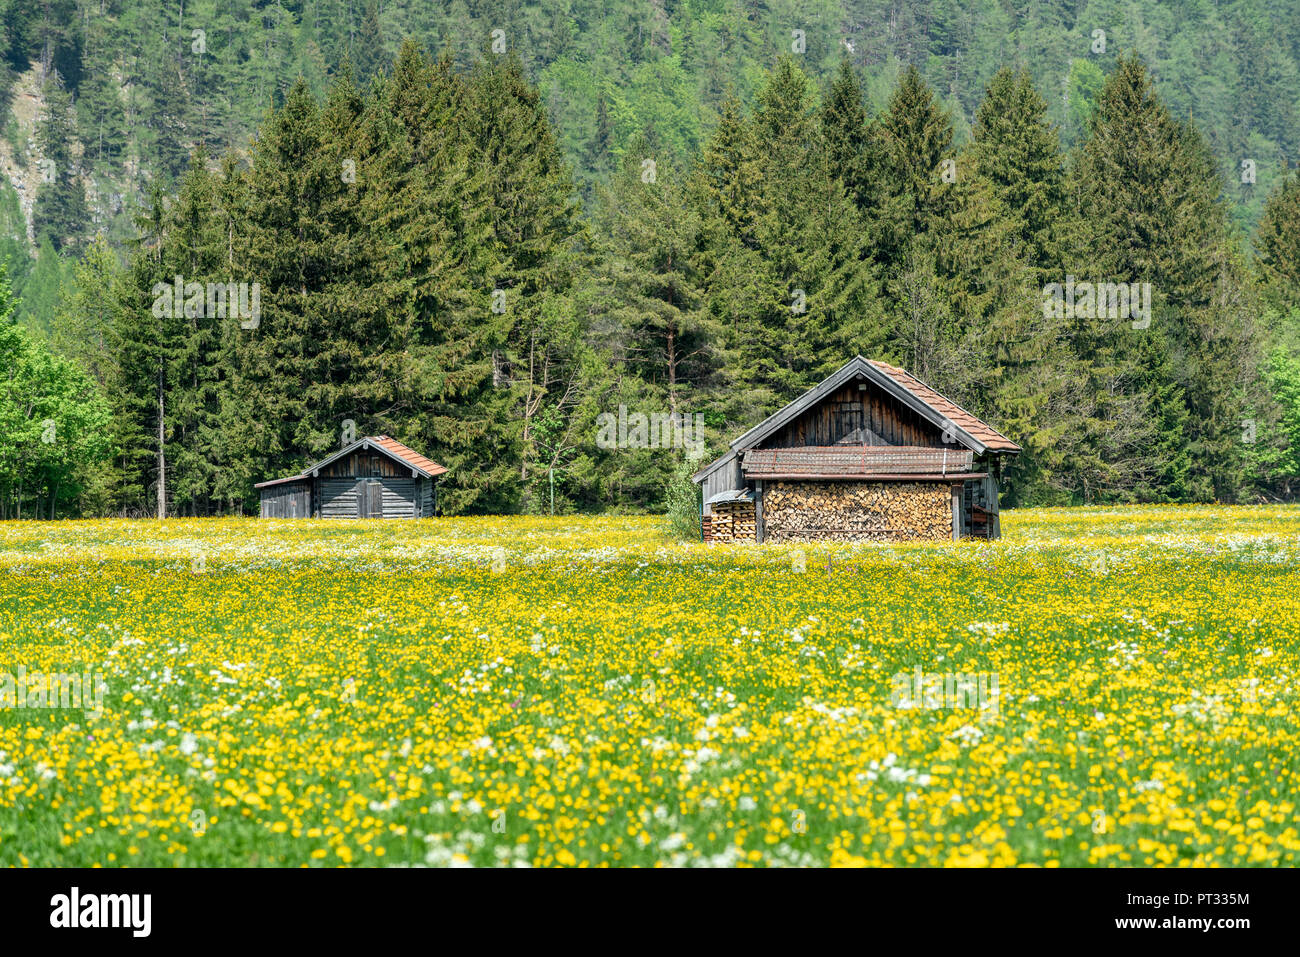 Mittenwald, district of Garmisch-Partenkirchen, Upper Bavaria, Germany, Europe, Stock Photo